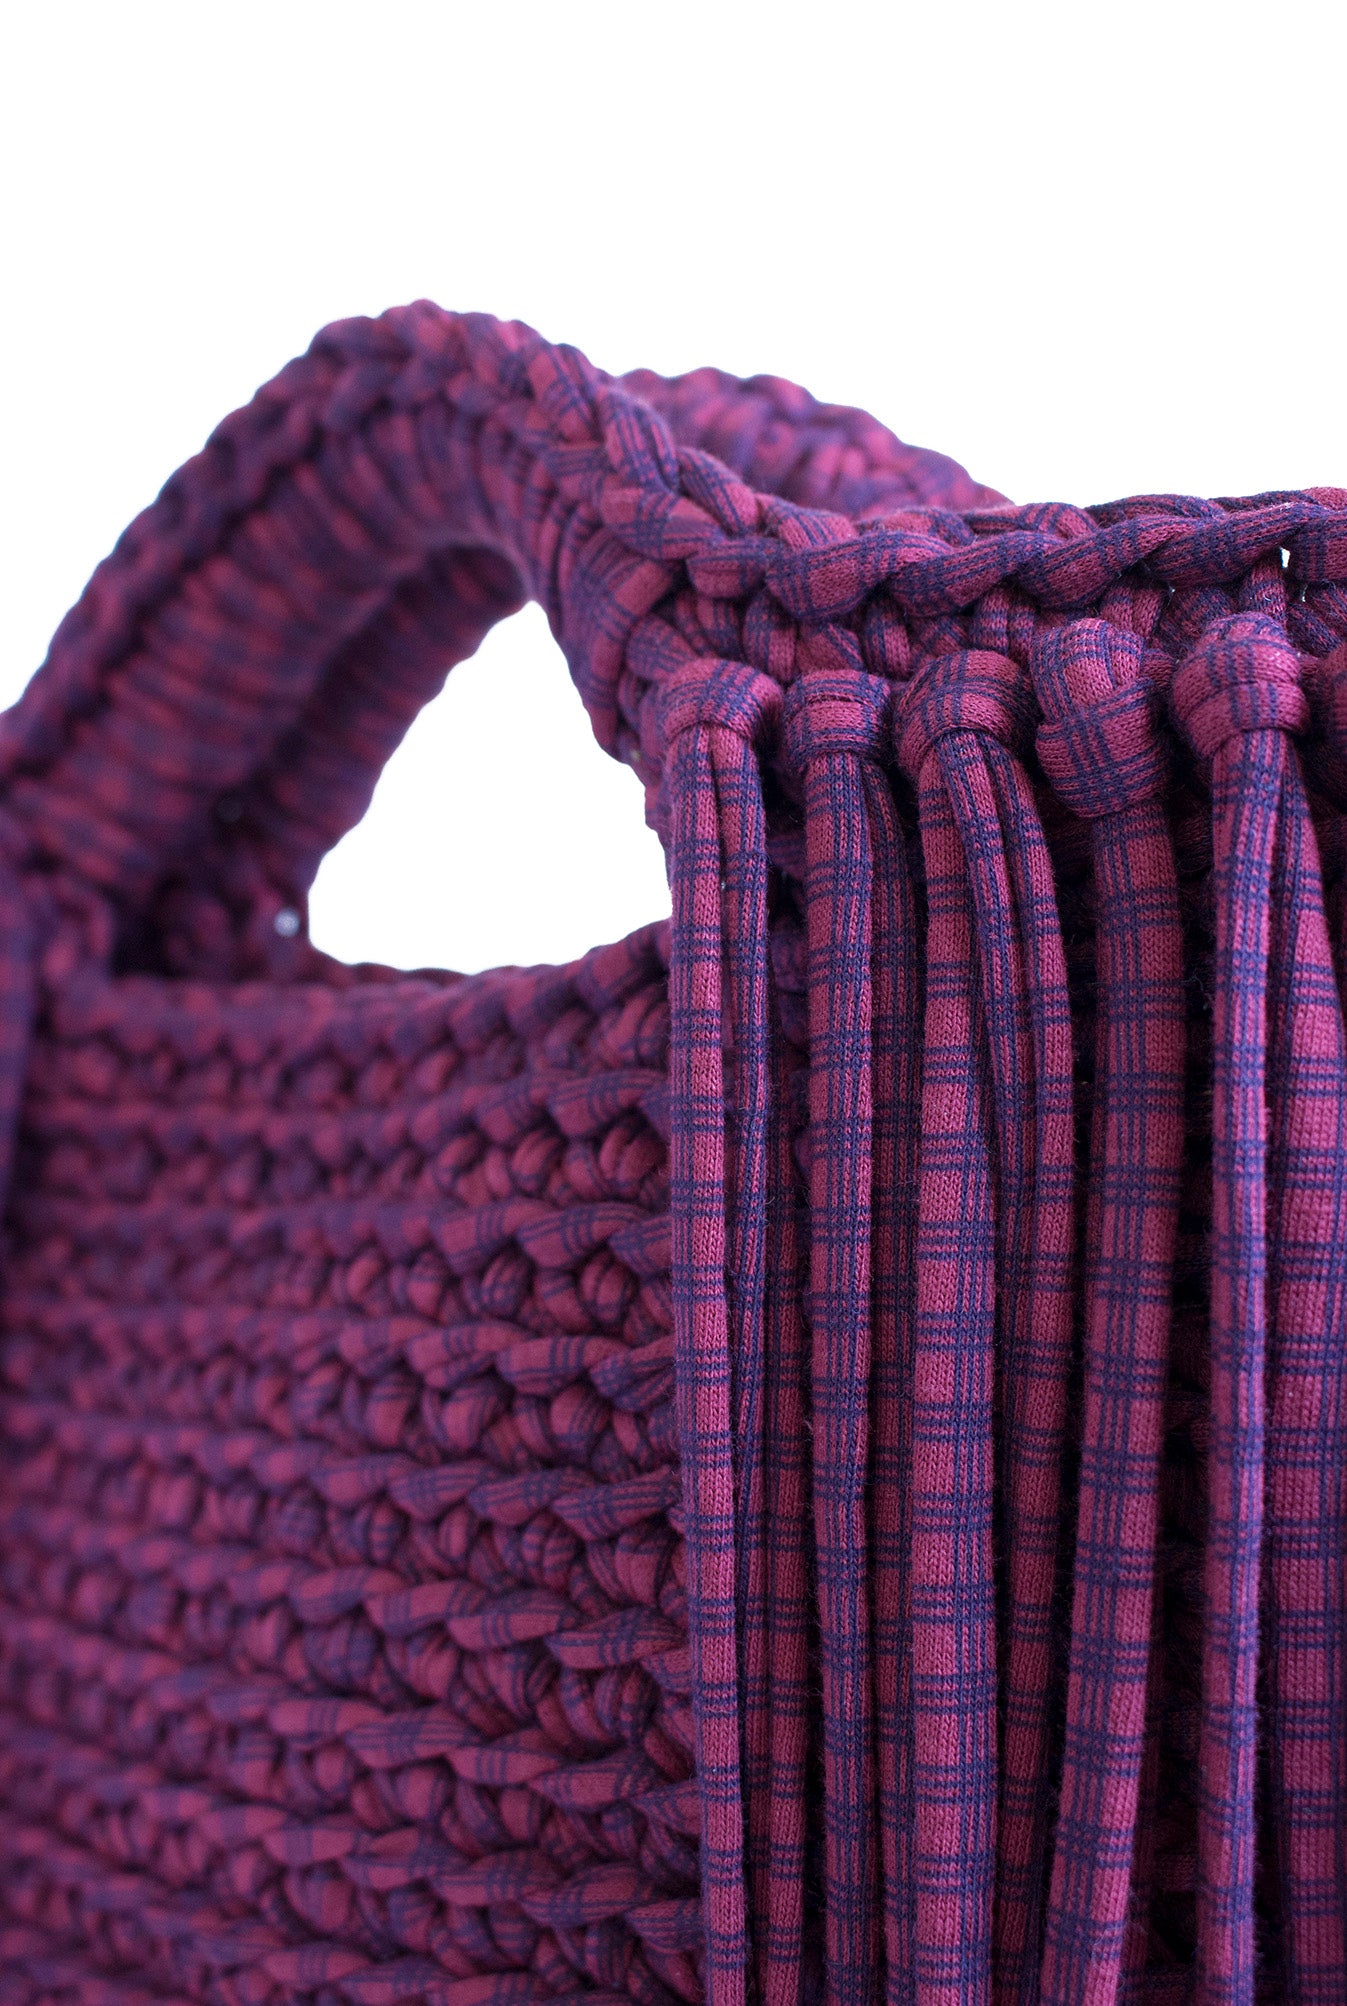 Blossom Crochet Crossbody Bag